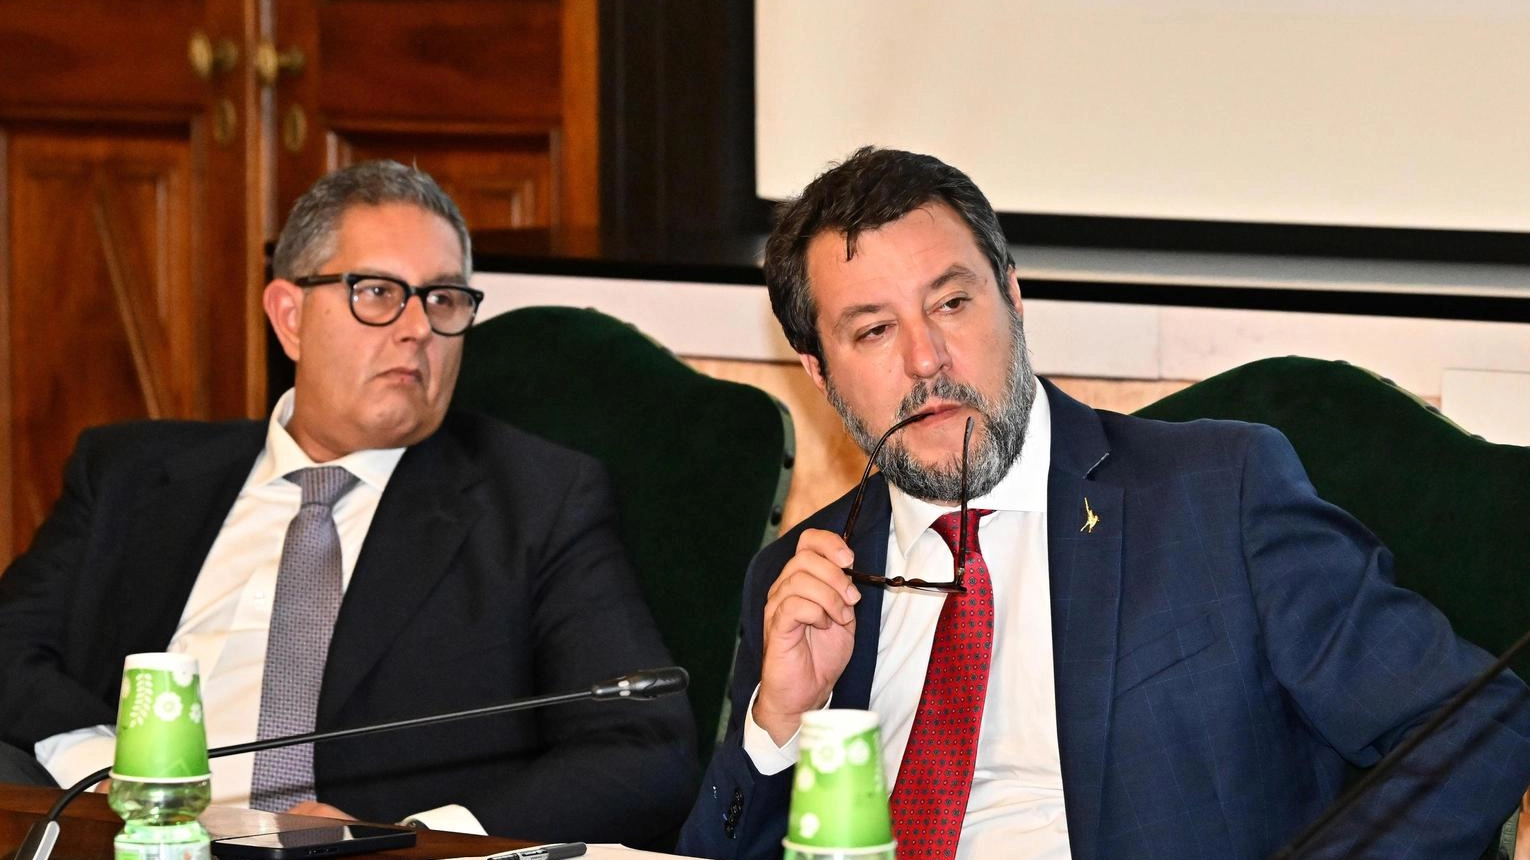 Il governatore della Liguria: "La legislatura è stata un reality show. Quattro anni di vita documentata, dal ristorante al colore della giacca...".